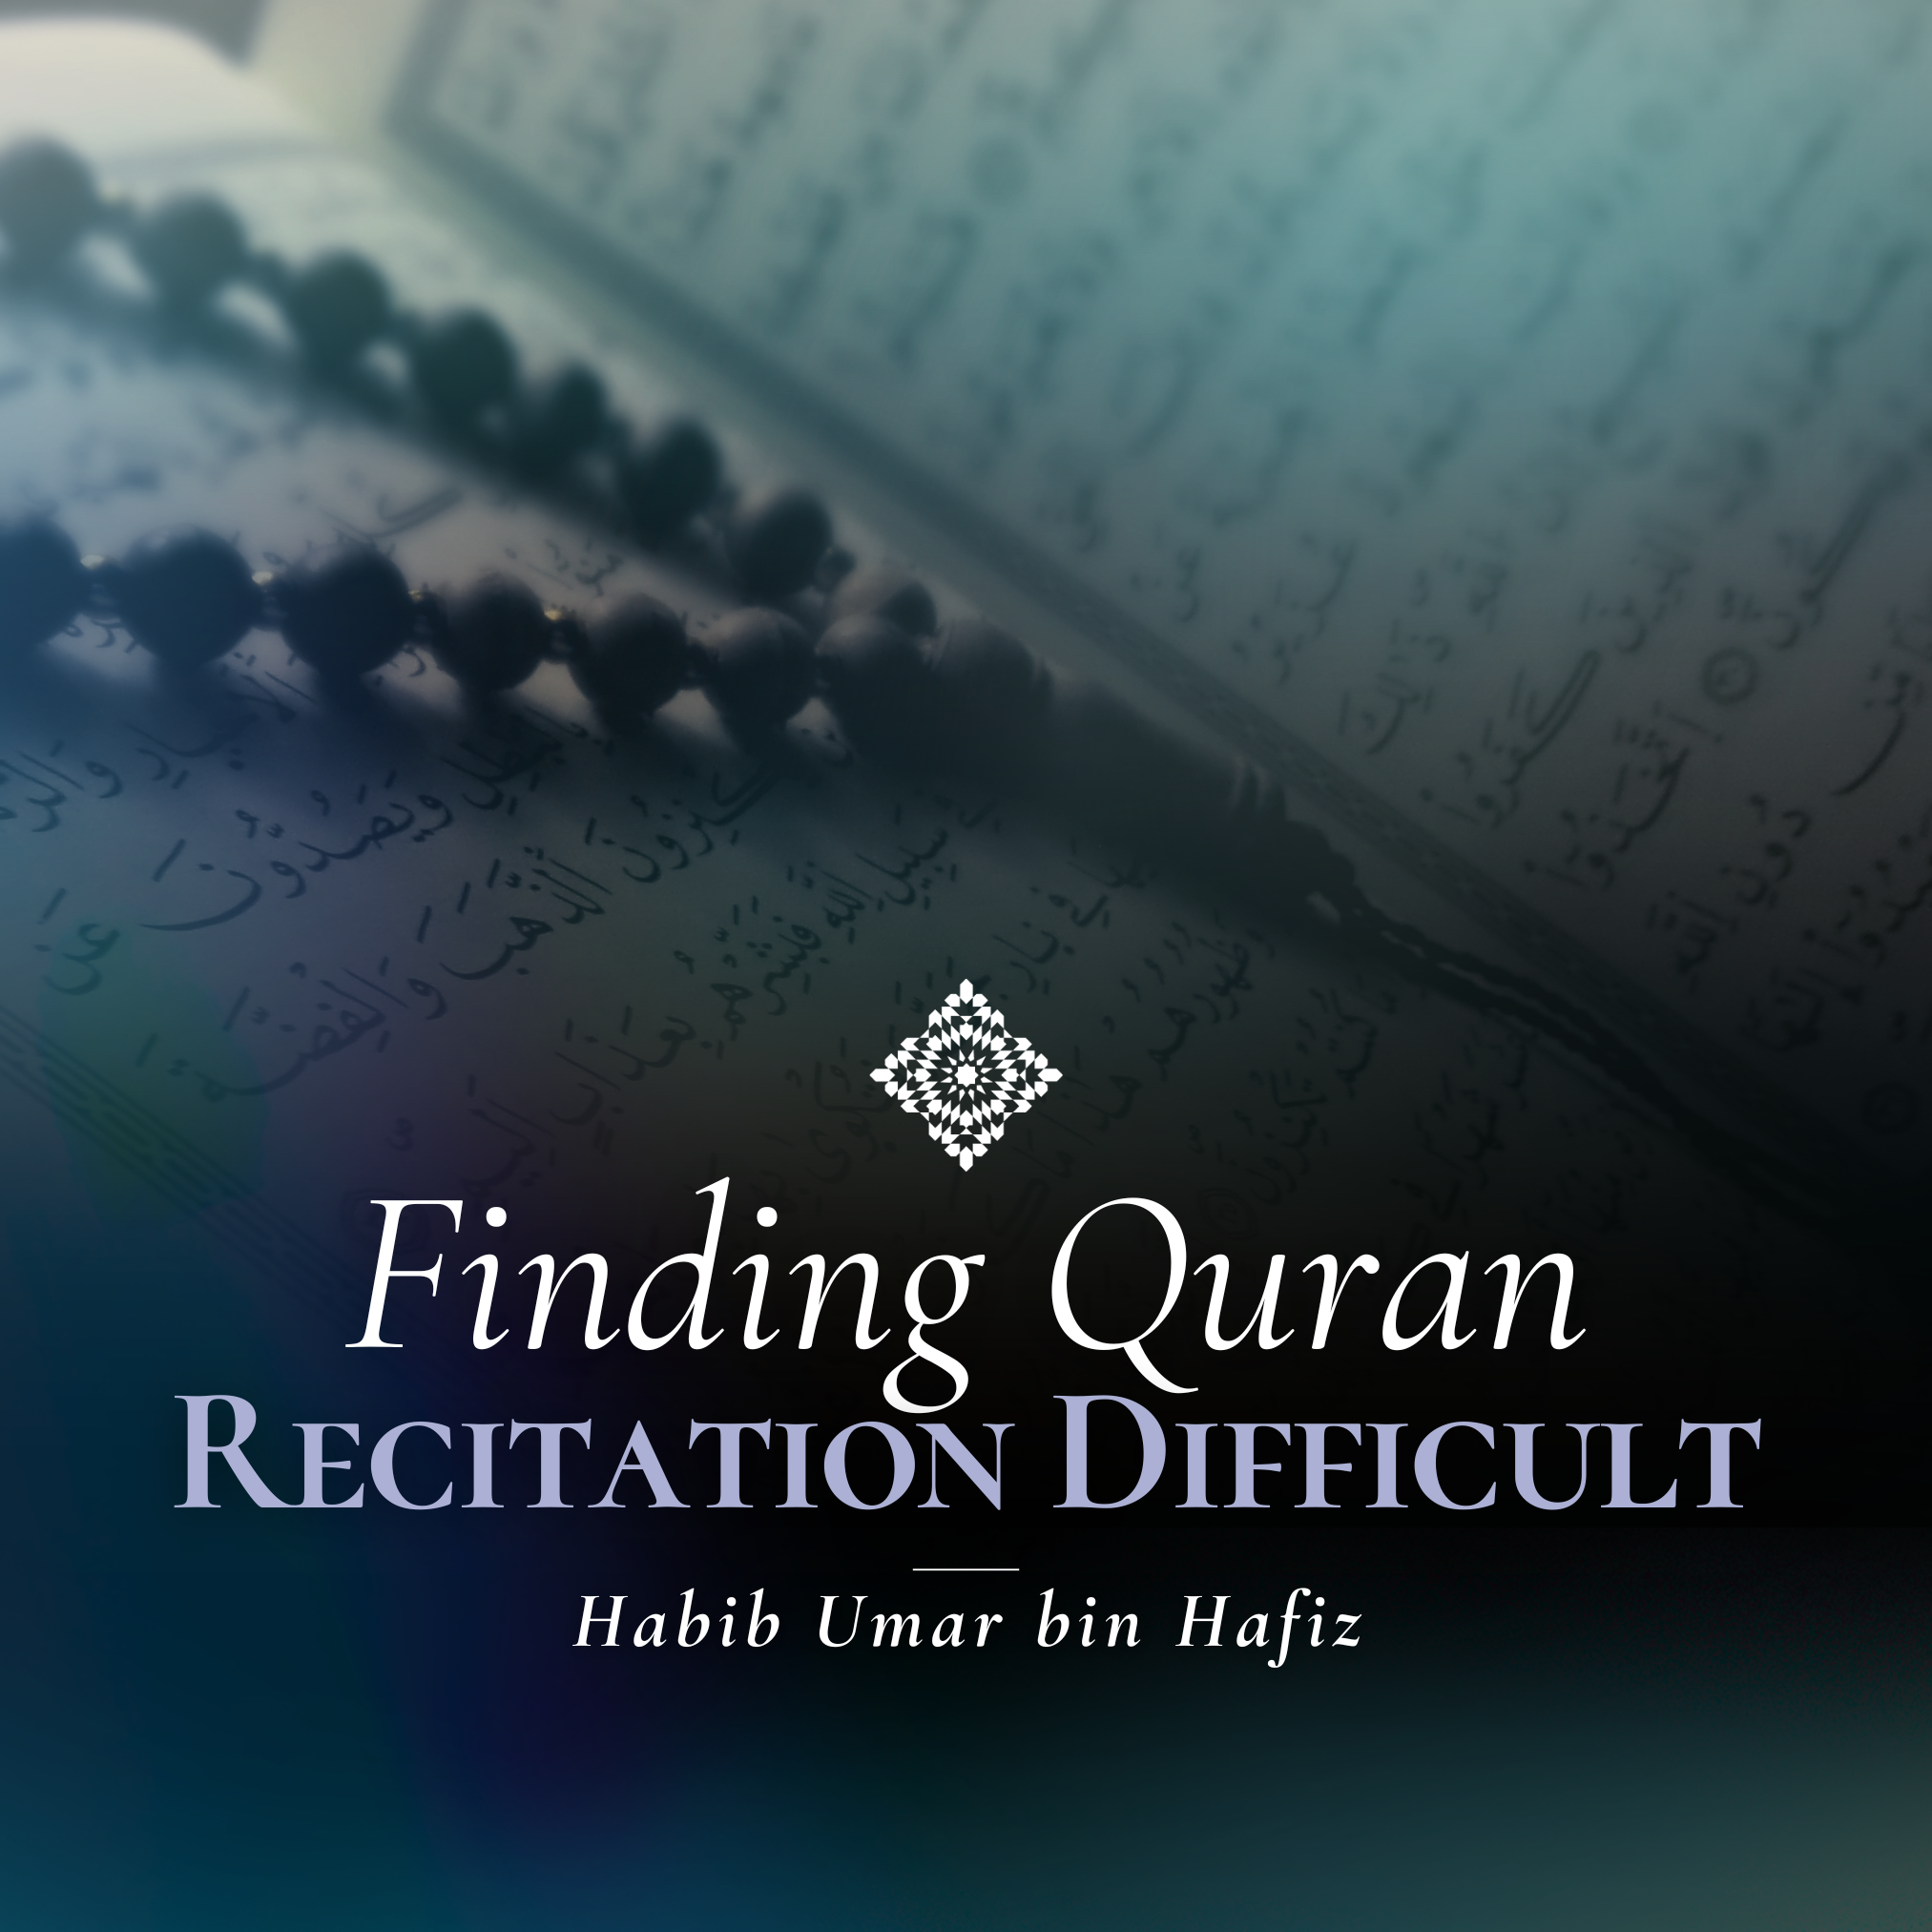 Finding Quran Recitation Difficult.png